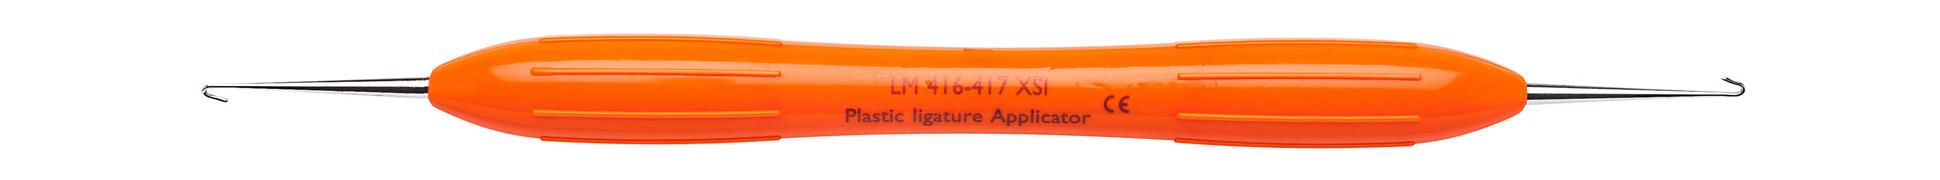 Plastic Ligature Applicator